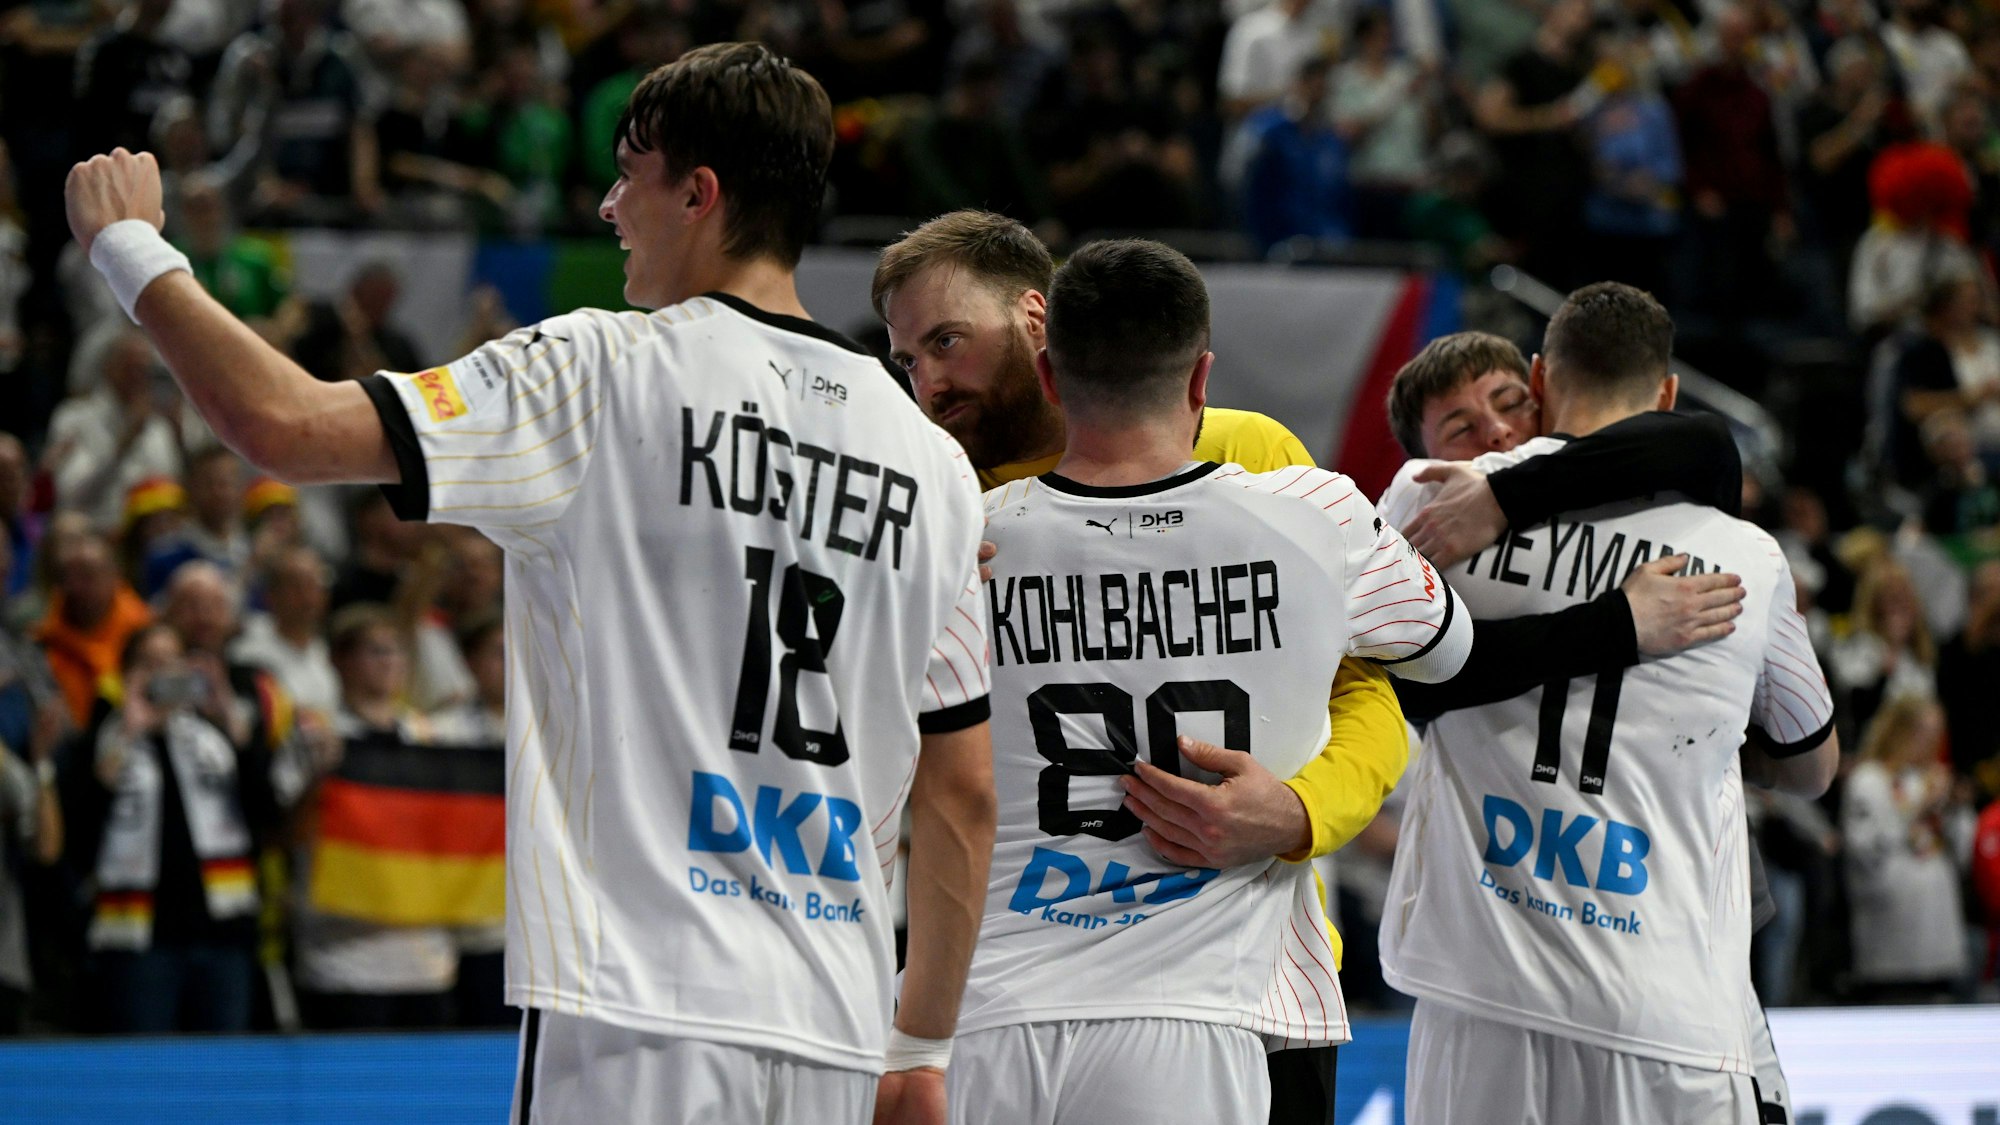 Die deutsche Handballmannschaft umarmt sich und jubelt vor einem unscharfen Publikum im Hintergrund.